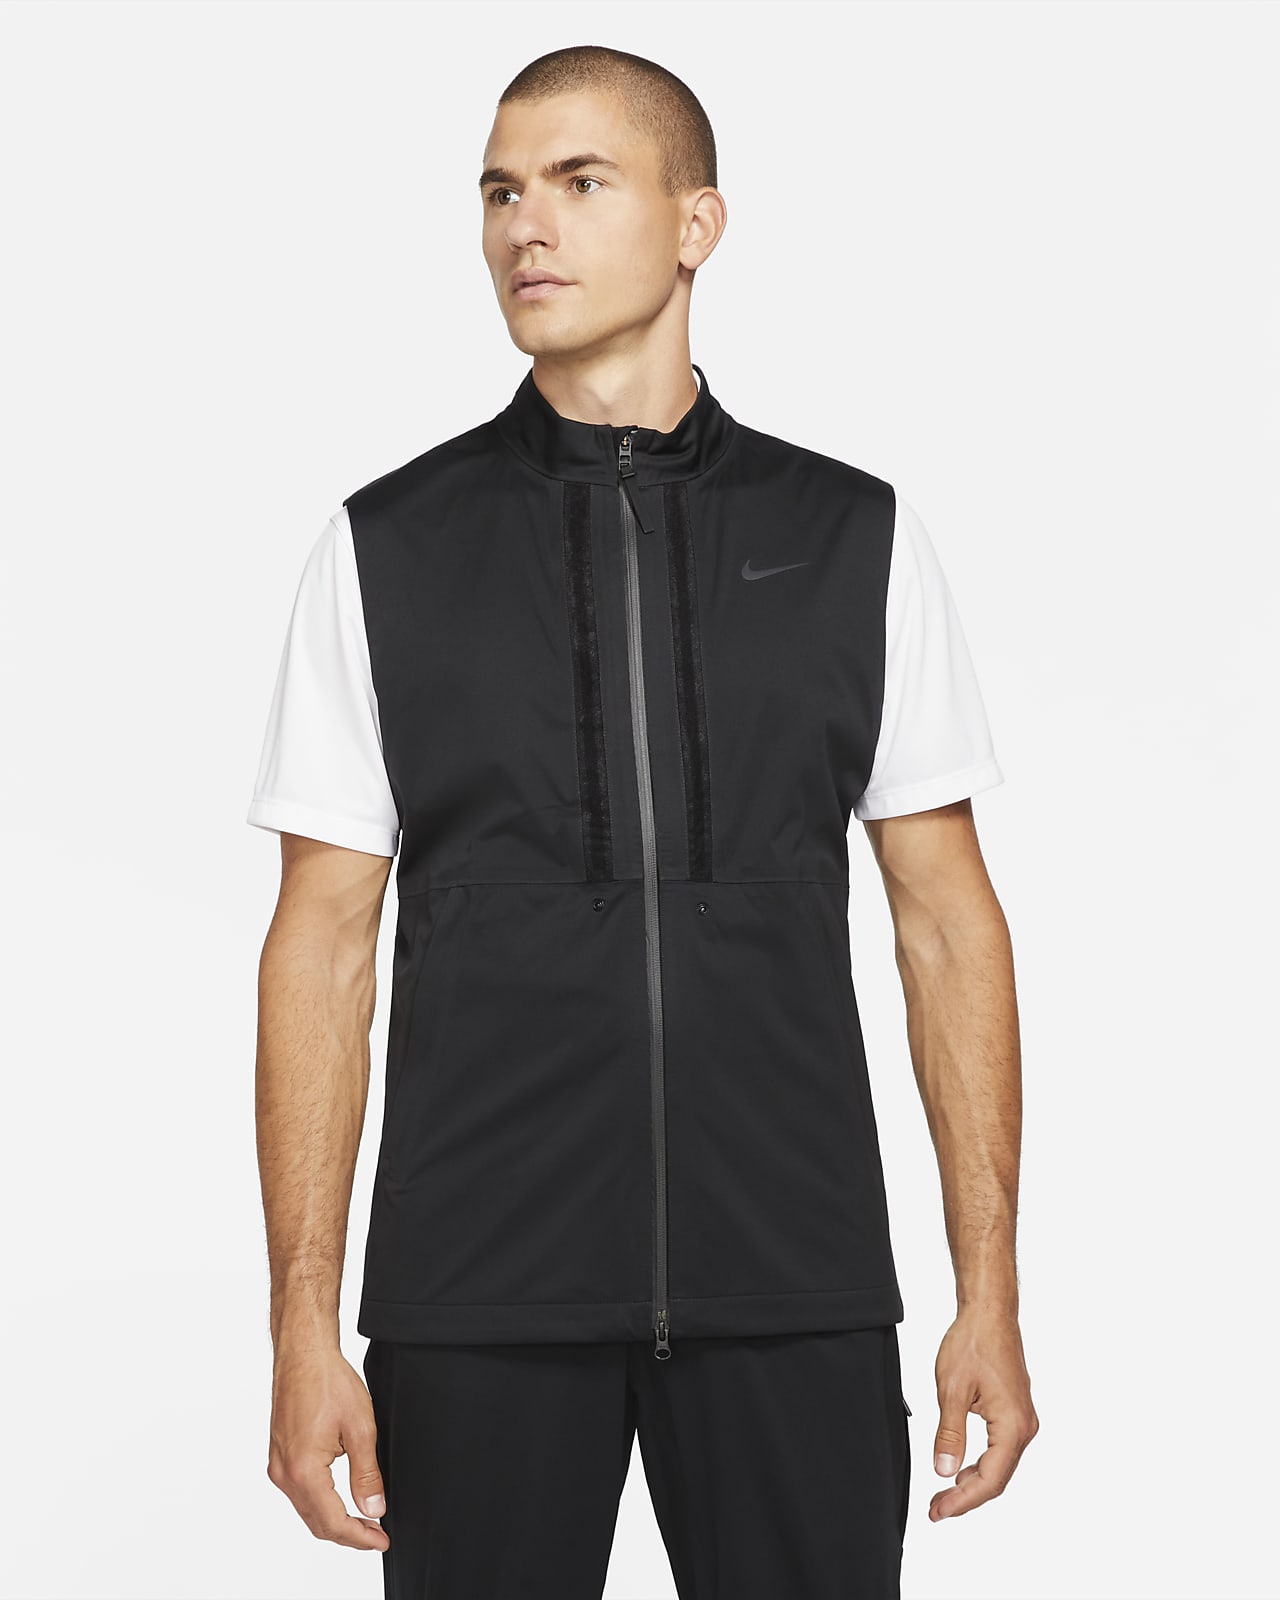 Nike Storm-FIT ADV Rapid Adapt Men's Golf Jacket. Nike.com